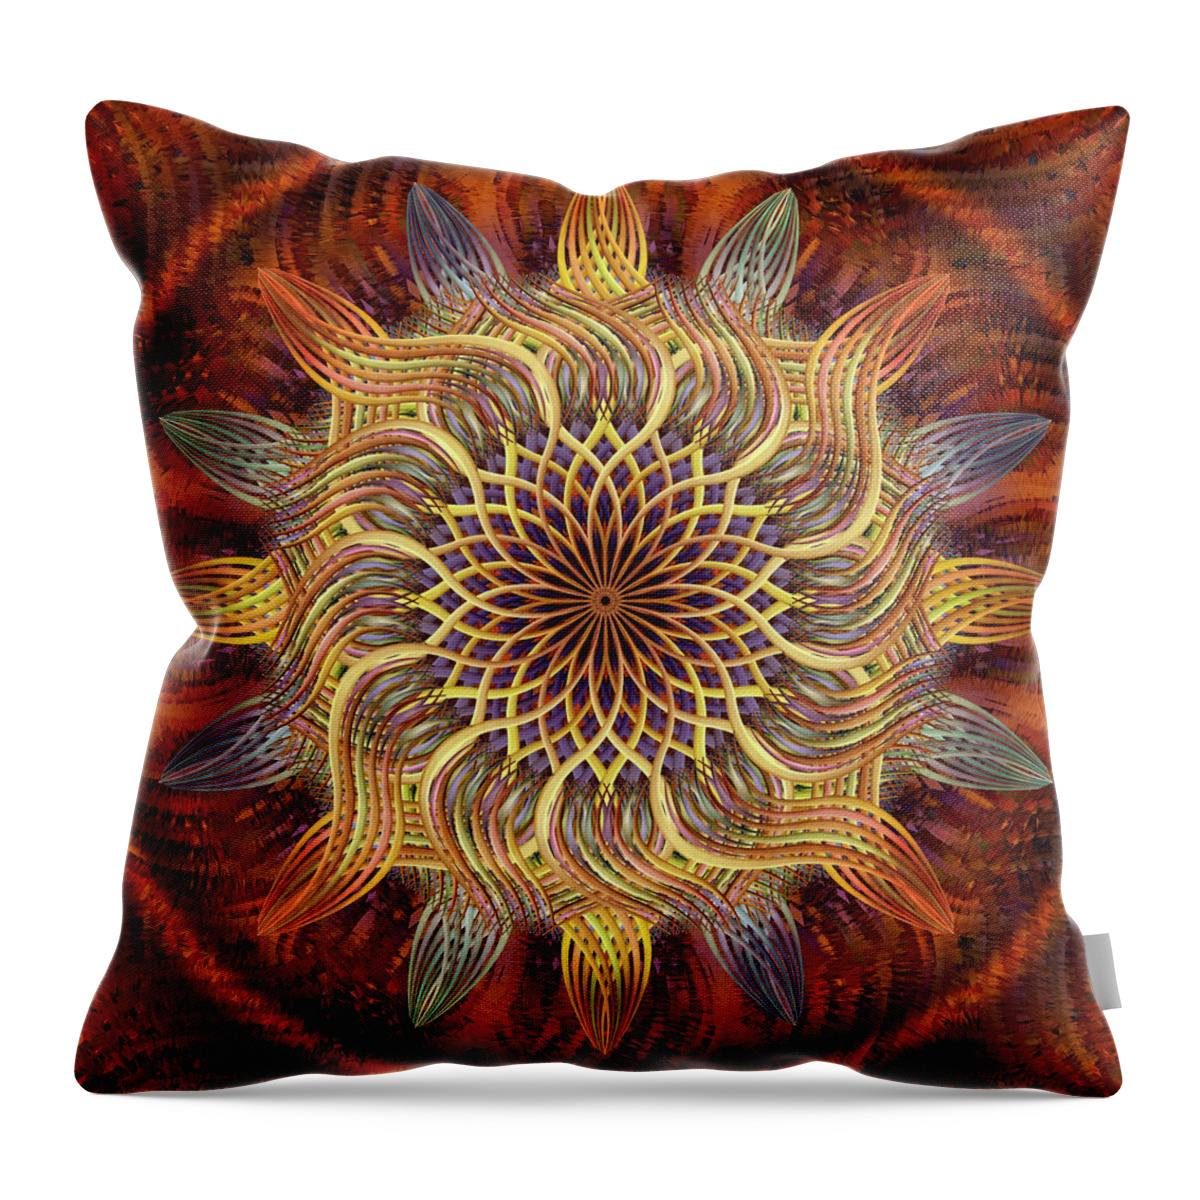 Pinwheel Mandala Throw Pillow featuring the digital art Golden Rhythm Slipstream by Becky Titus